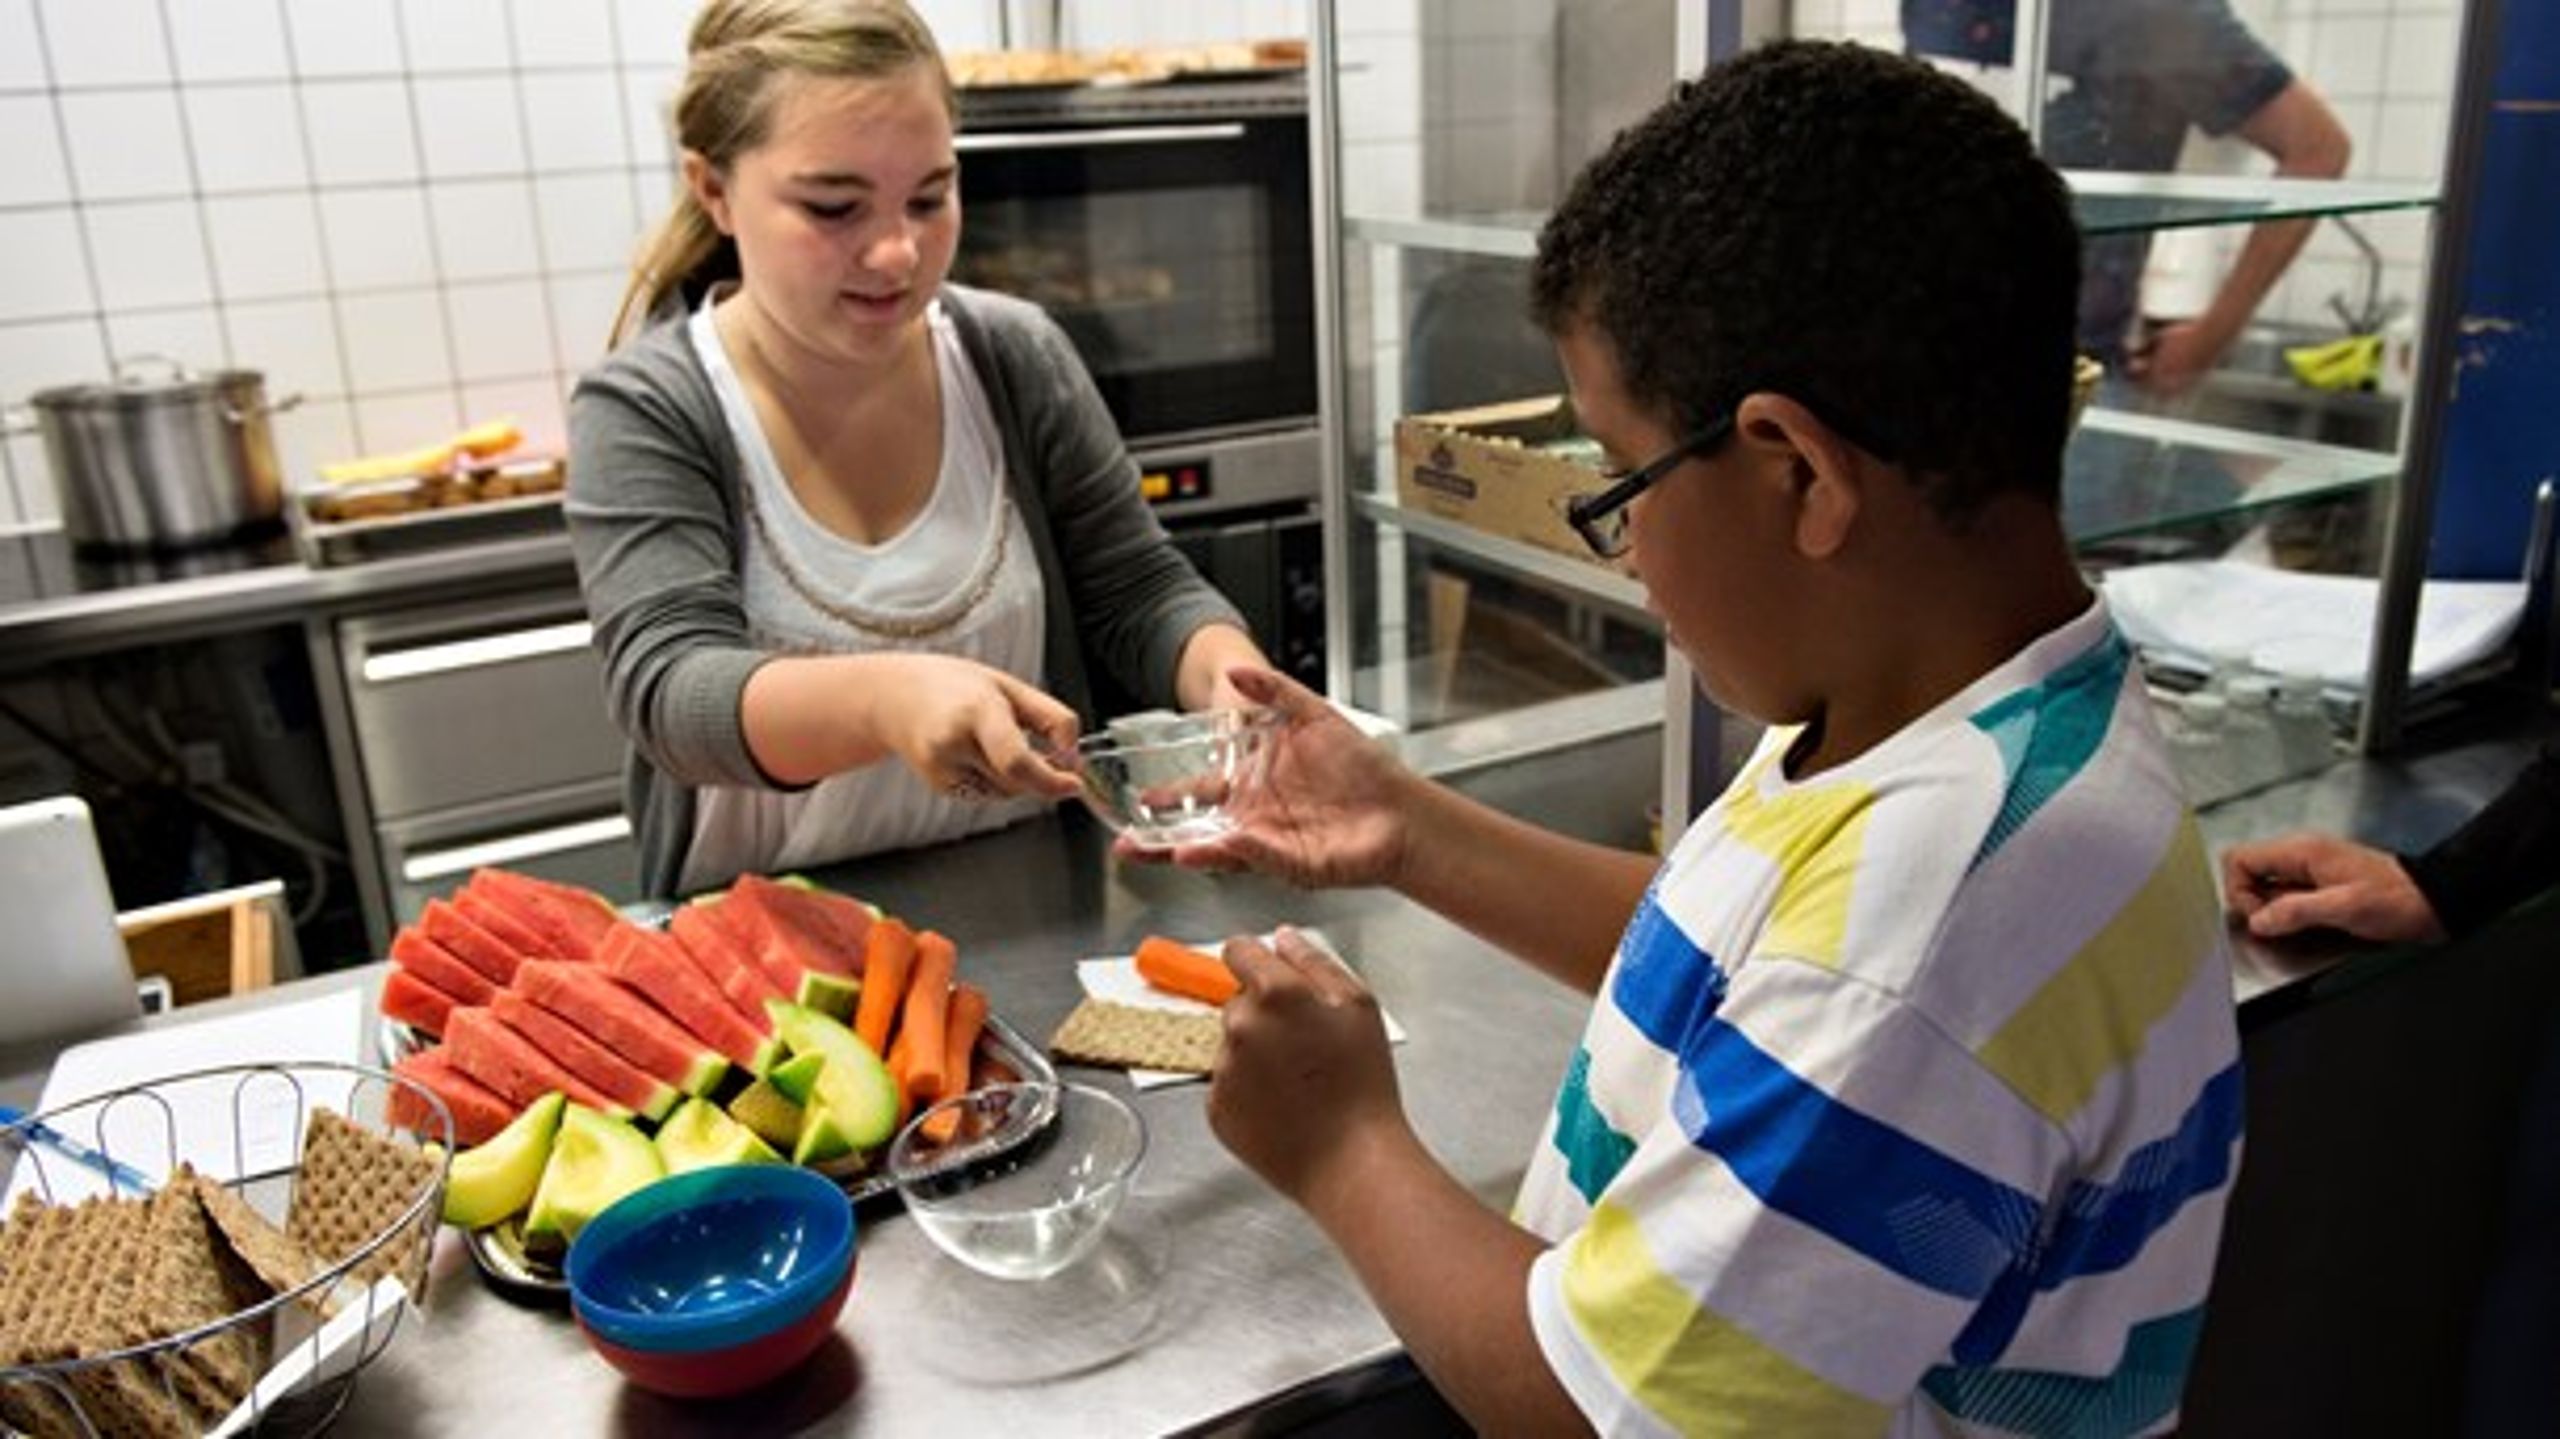 Fokus på sunde måltider i skolen kan bidrage til et fald i overvægt og styrke børnenes indlæring, skriver Danske Regioner.